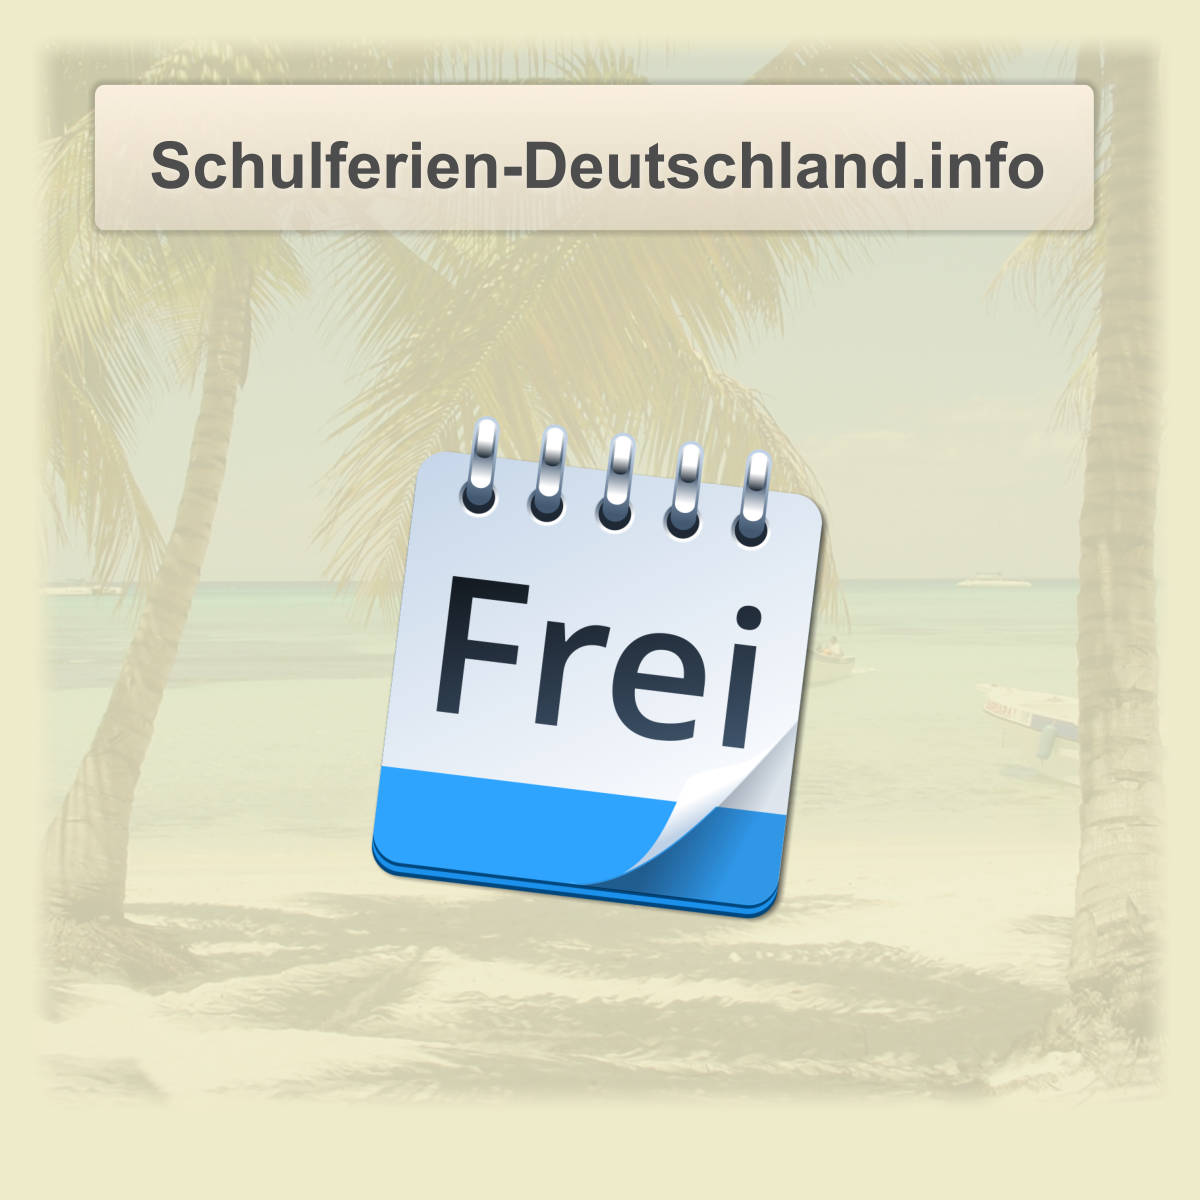 (c) Schulferien-deutschland.info